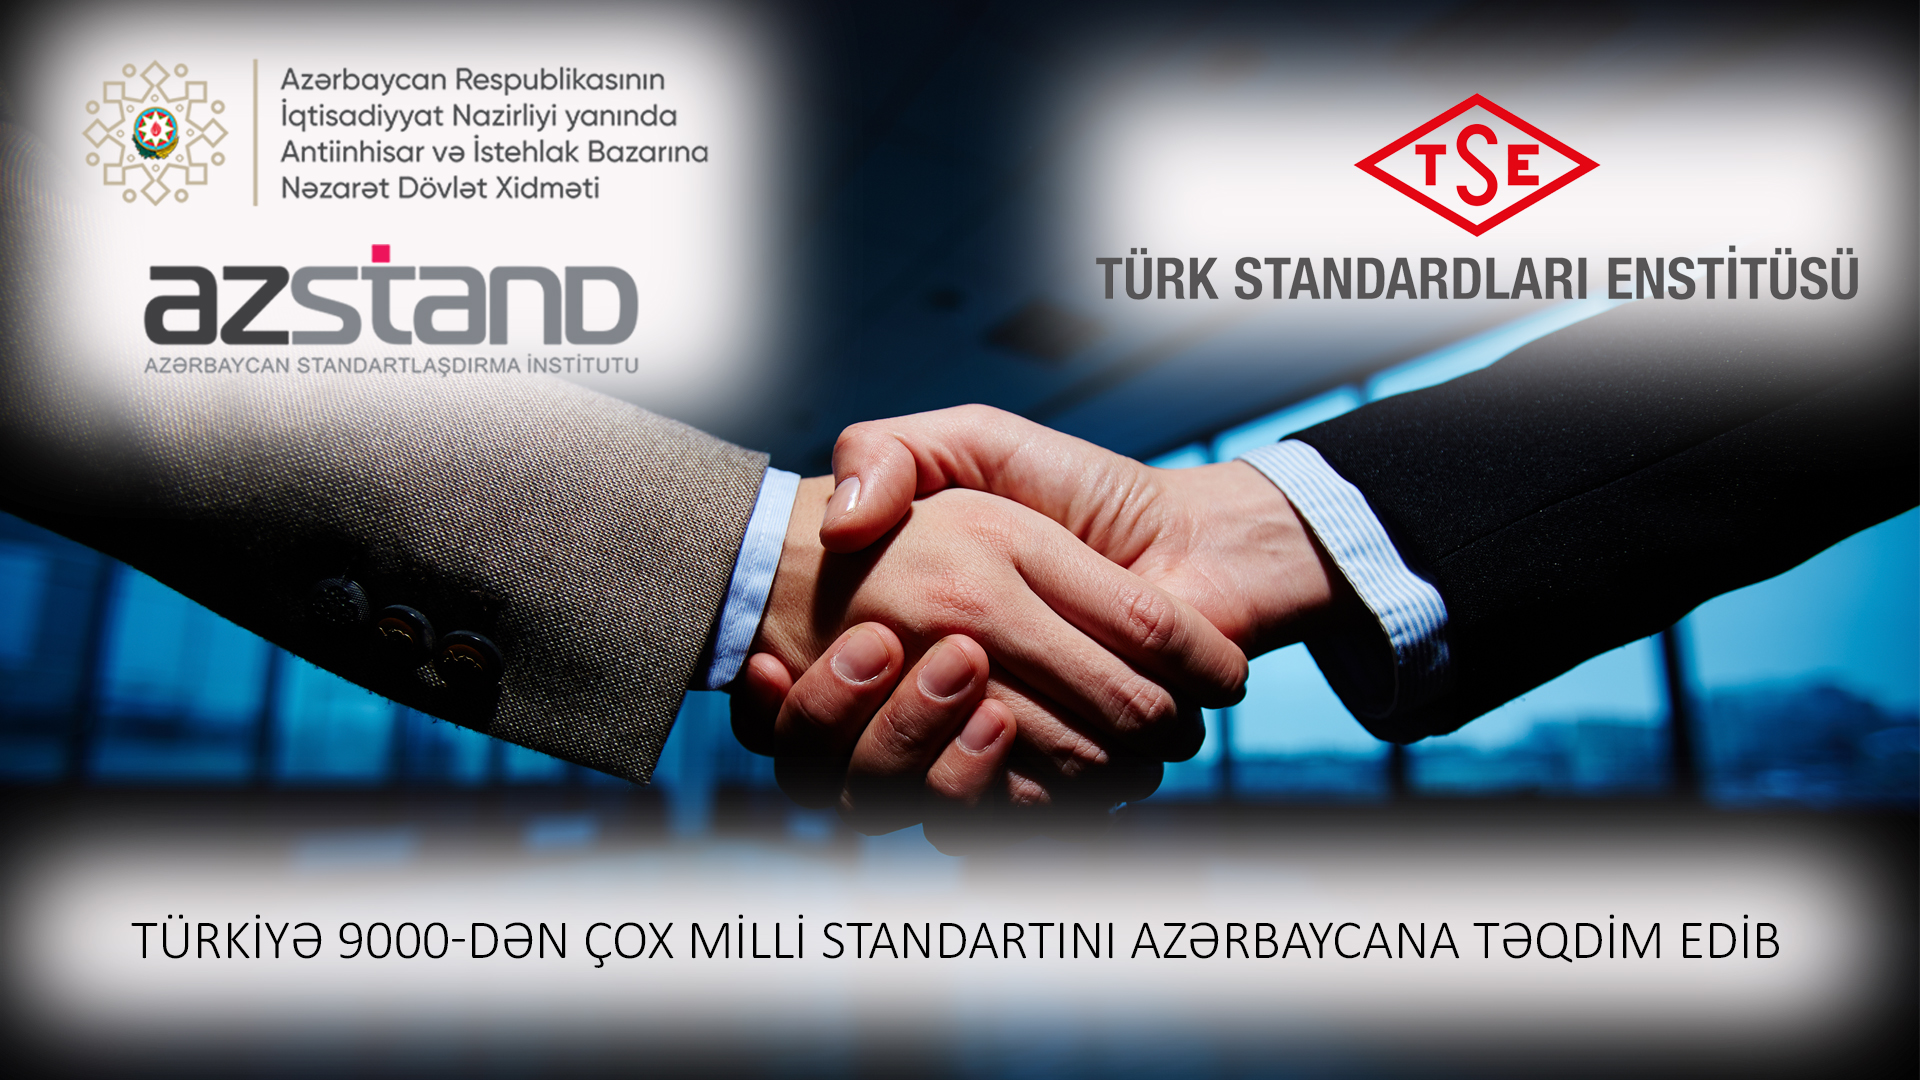 Турция представила Азербайджану более 9 тысяч национальных стандартов